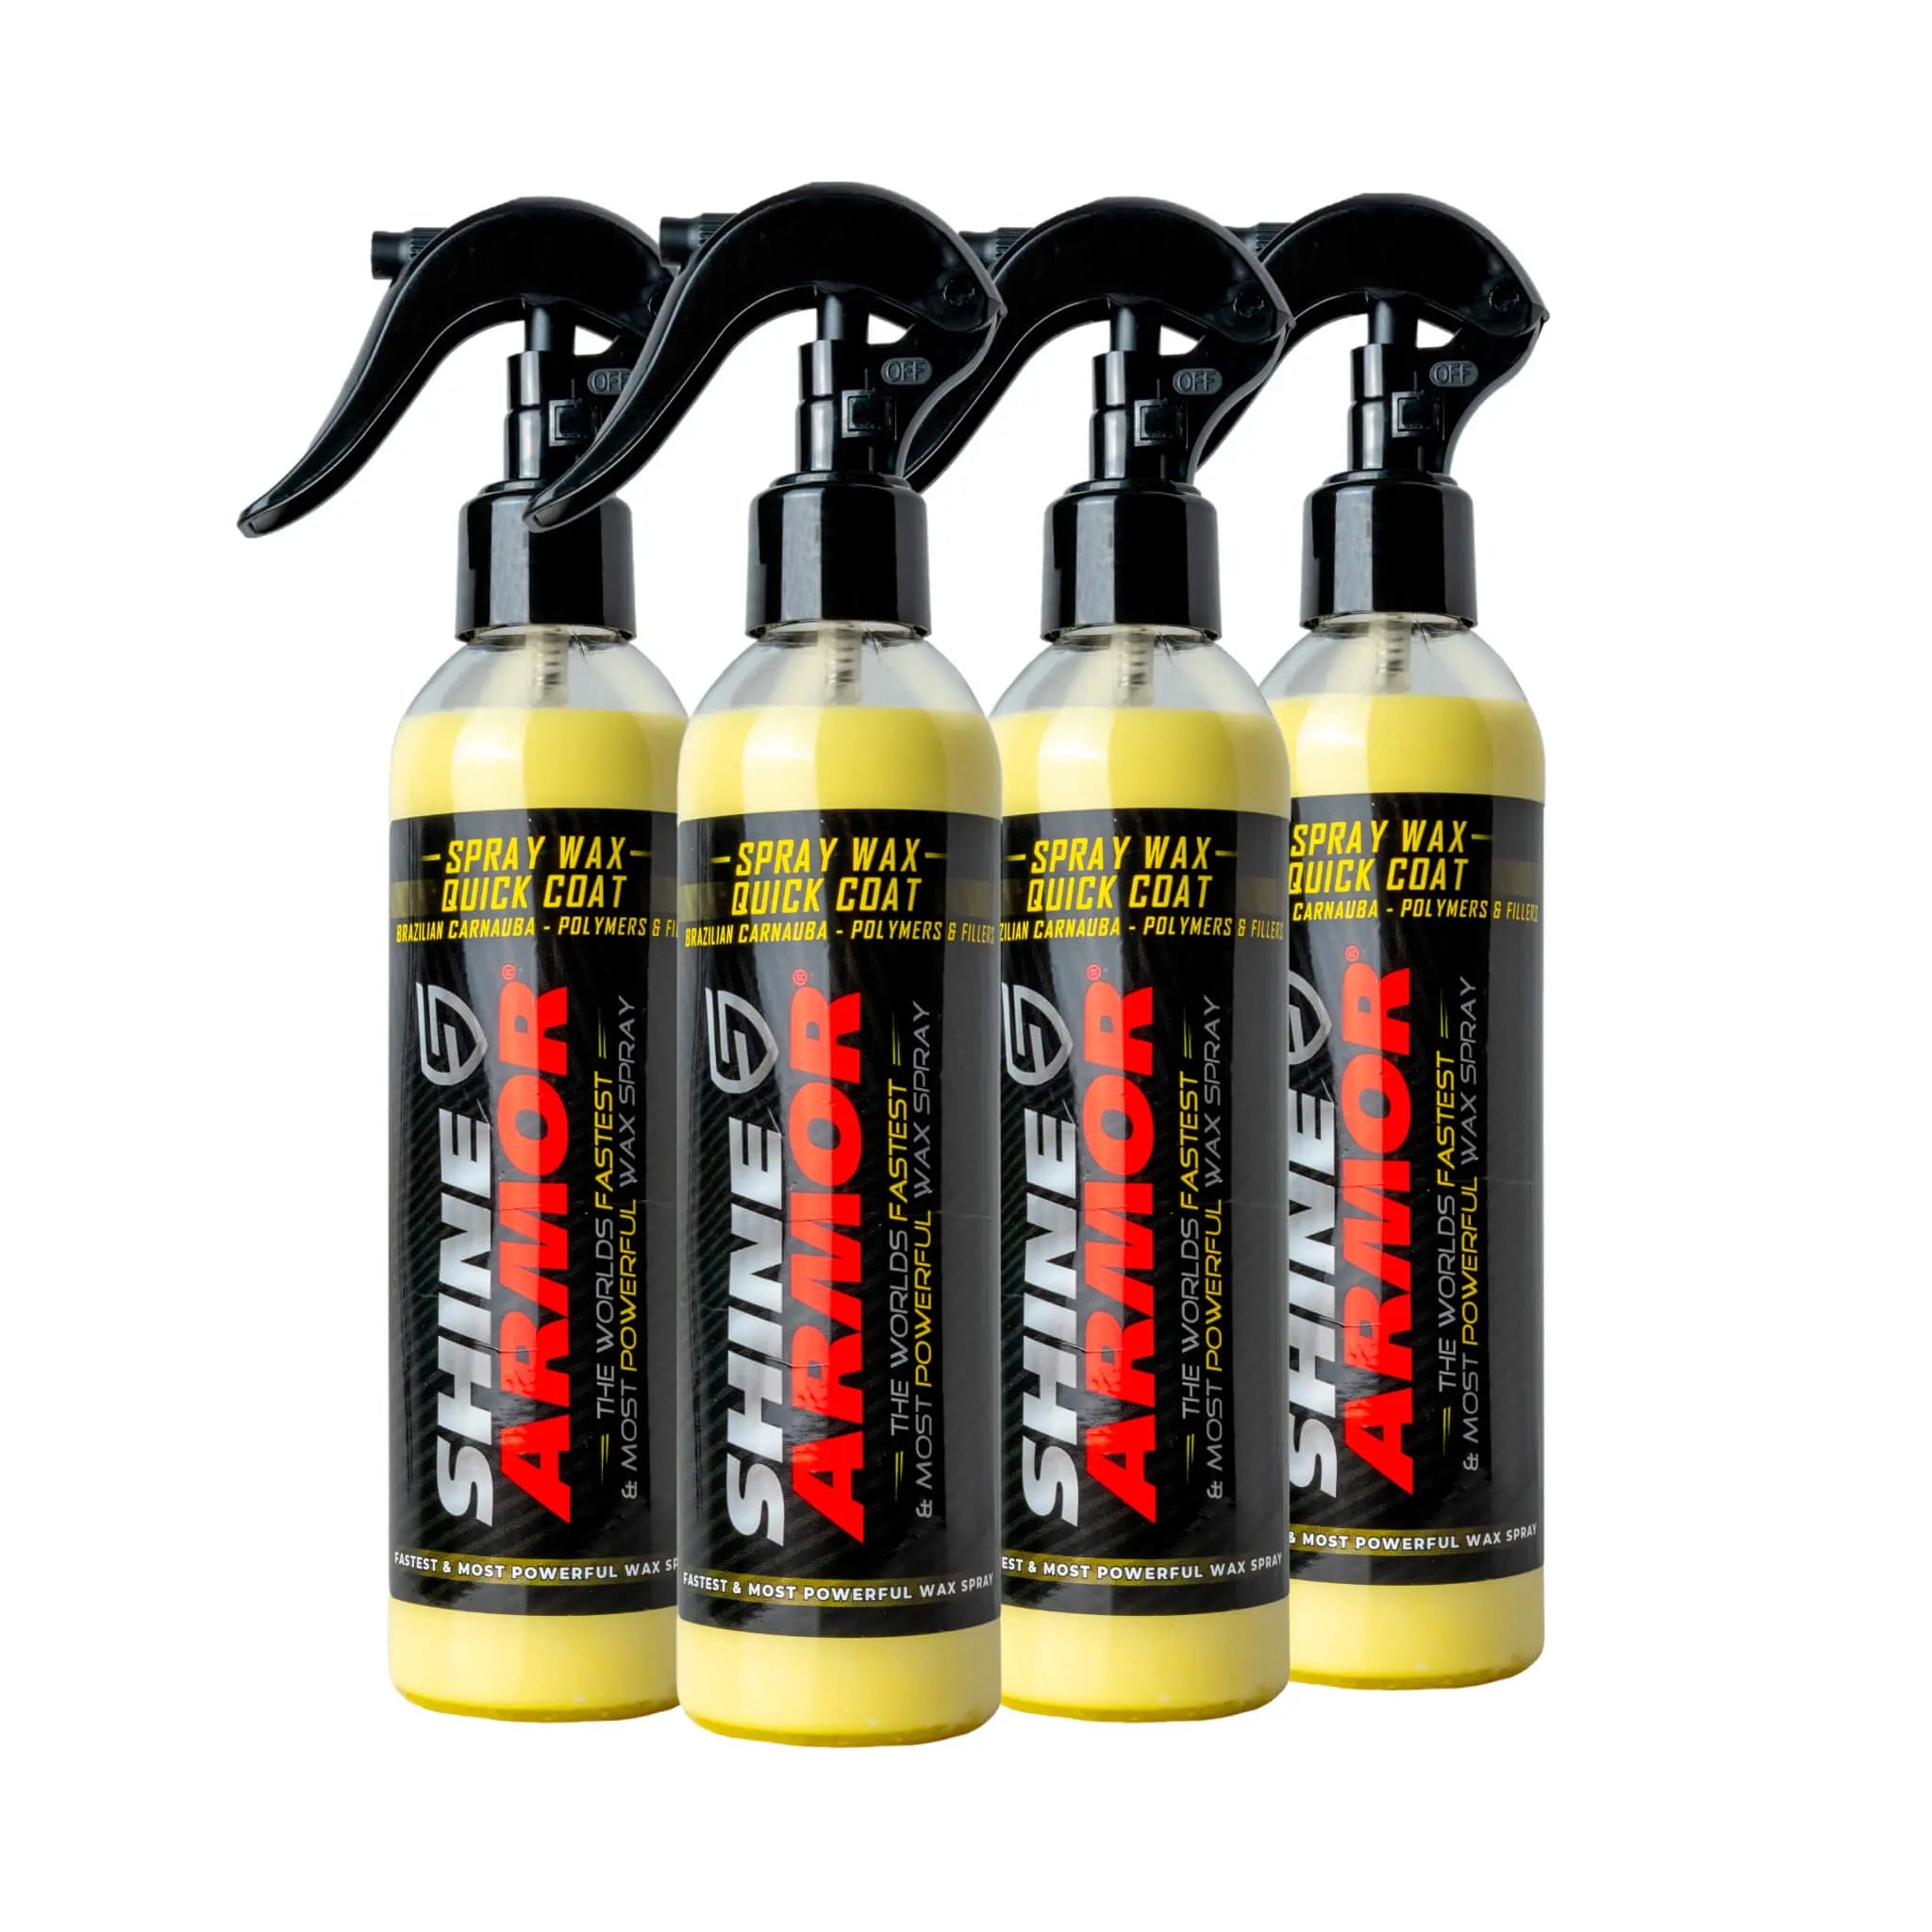  SHINE ARMOR Deicer Spray & Carnauba Wax Liquid Spray - Easily  Melts Ice Frost and Snow, Hybrid Hydrophobic Car Polish and Car Shine Spray  : Automotive